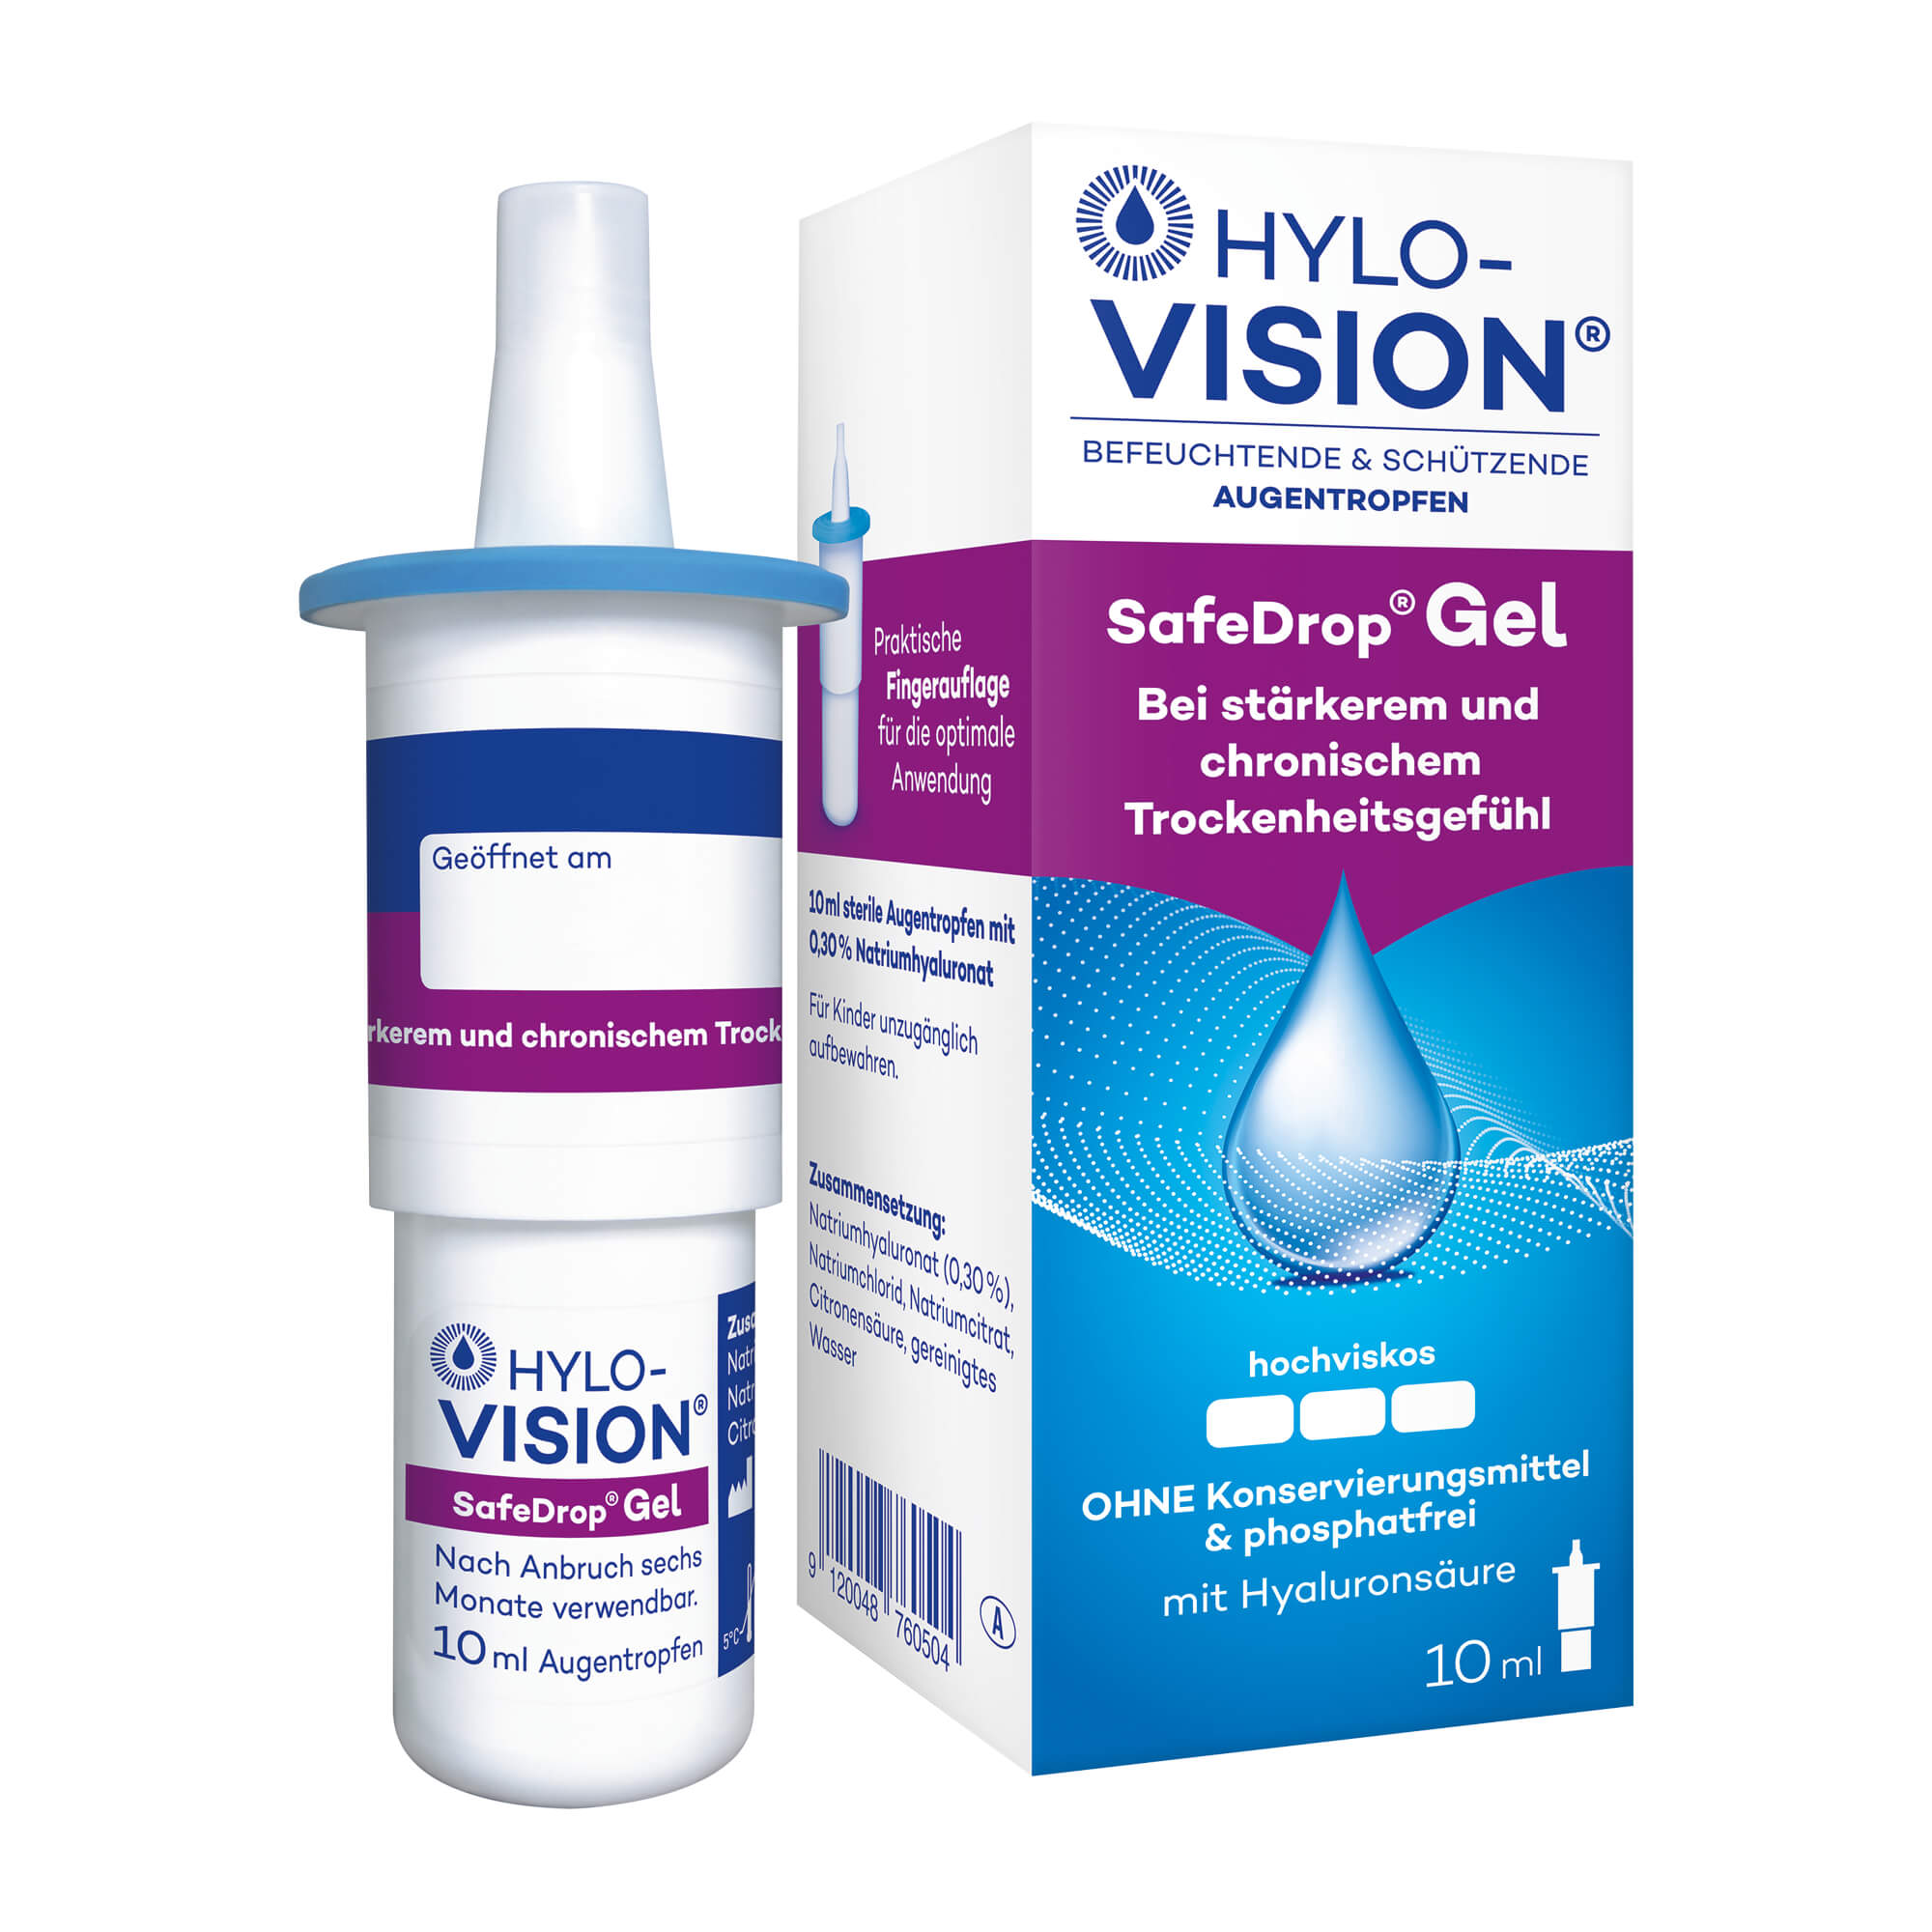 Zur Befeuchtung und zum Schutz der Augenoberfläche mit Hyaluronsäure. Ohne Konservierungsmittel.